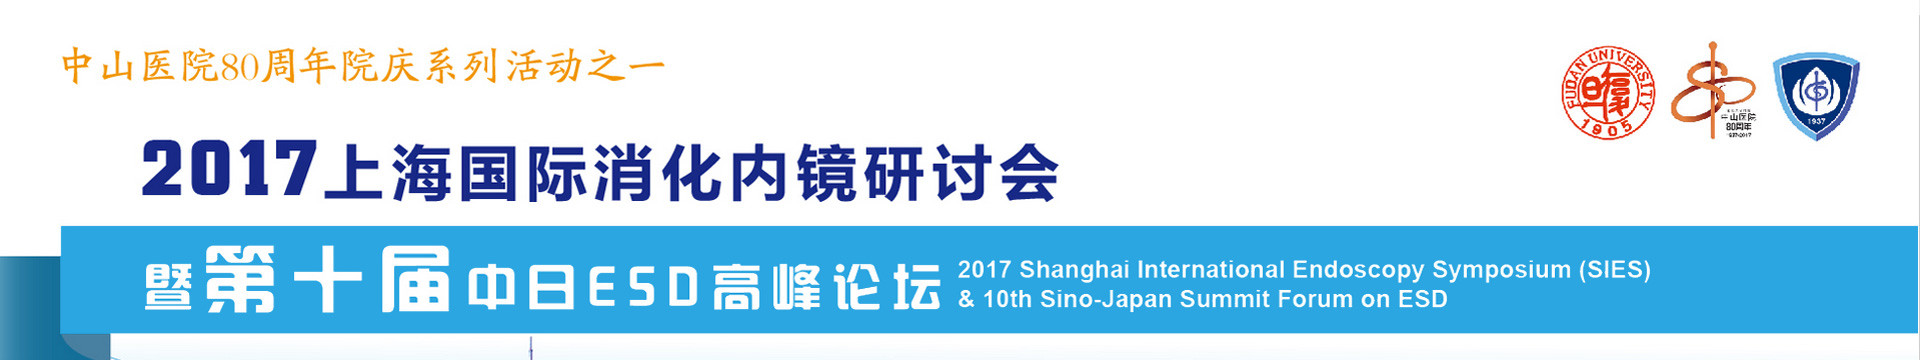 2017上海国际消化内镜研讨会暨第十届中日ESD高峰论坛